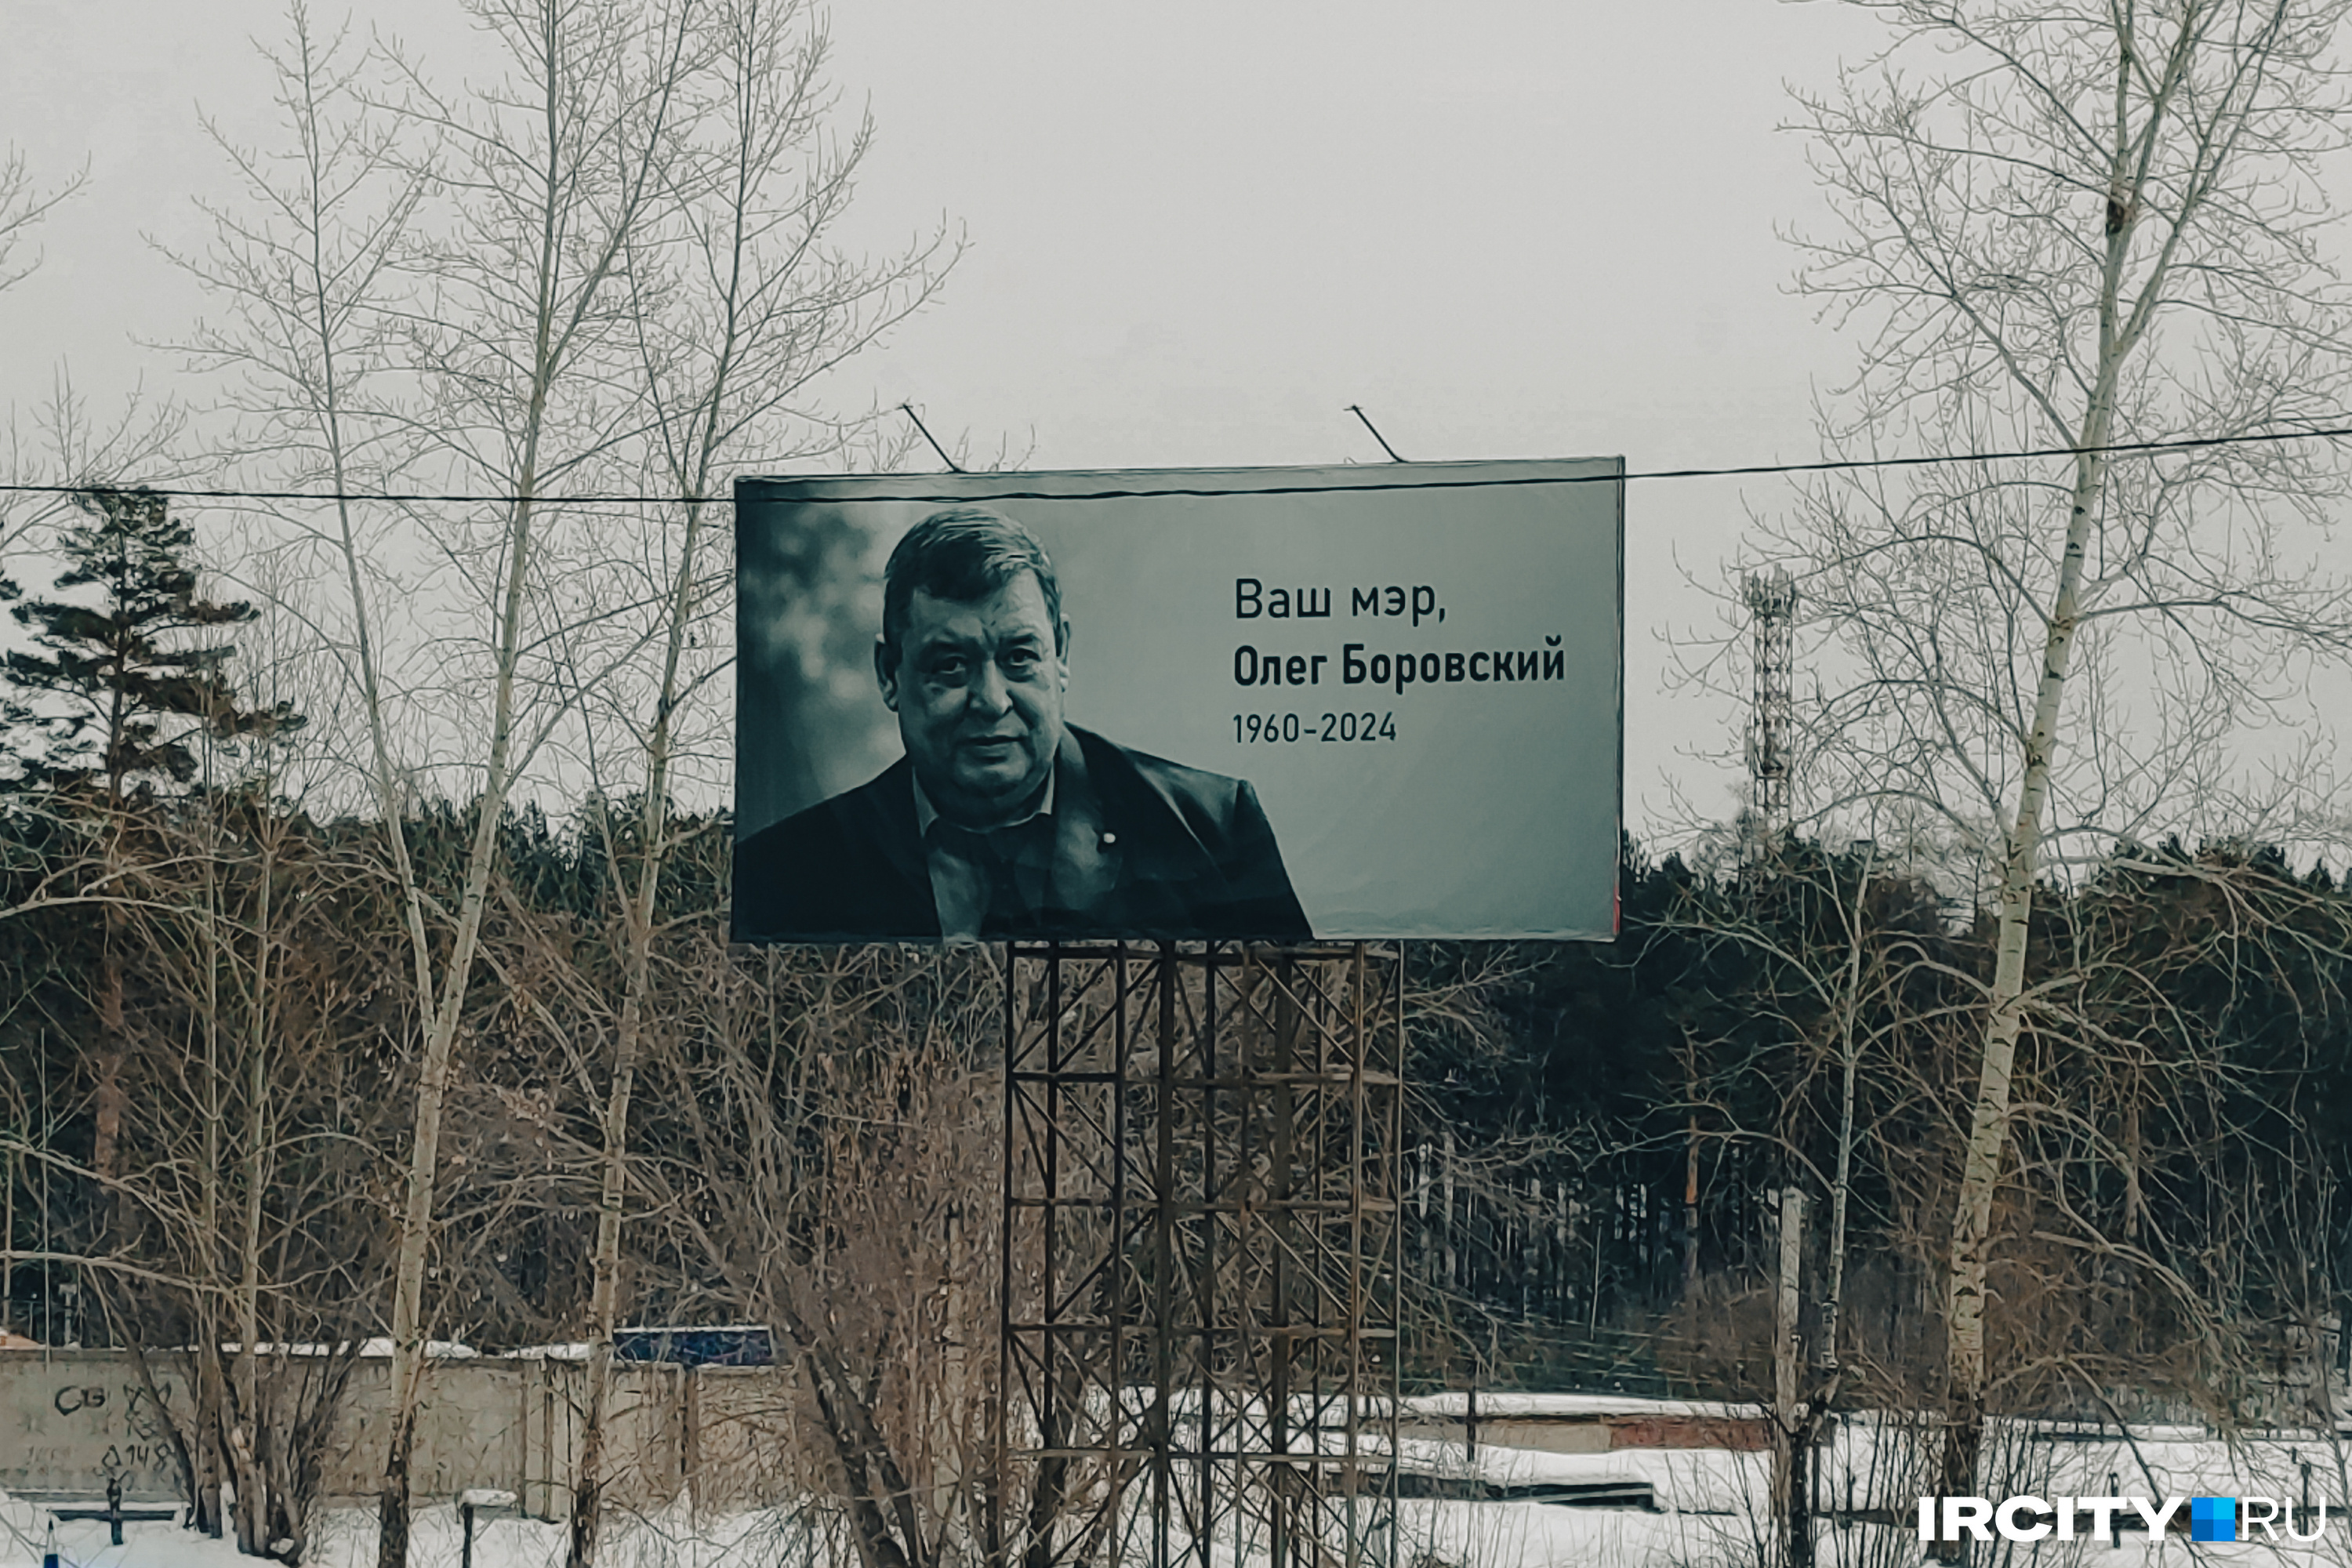 Баннер с черно-белой фотографией Олега Боровского появился недавно